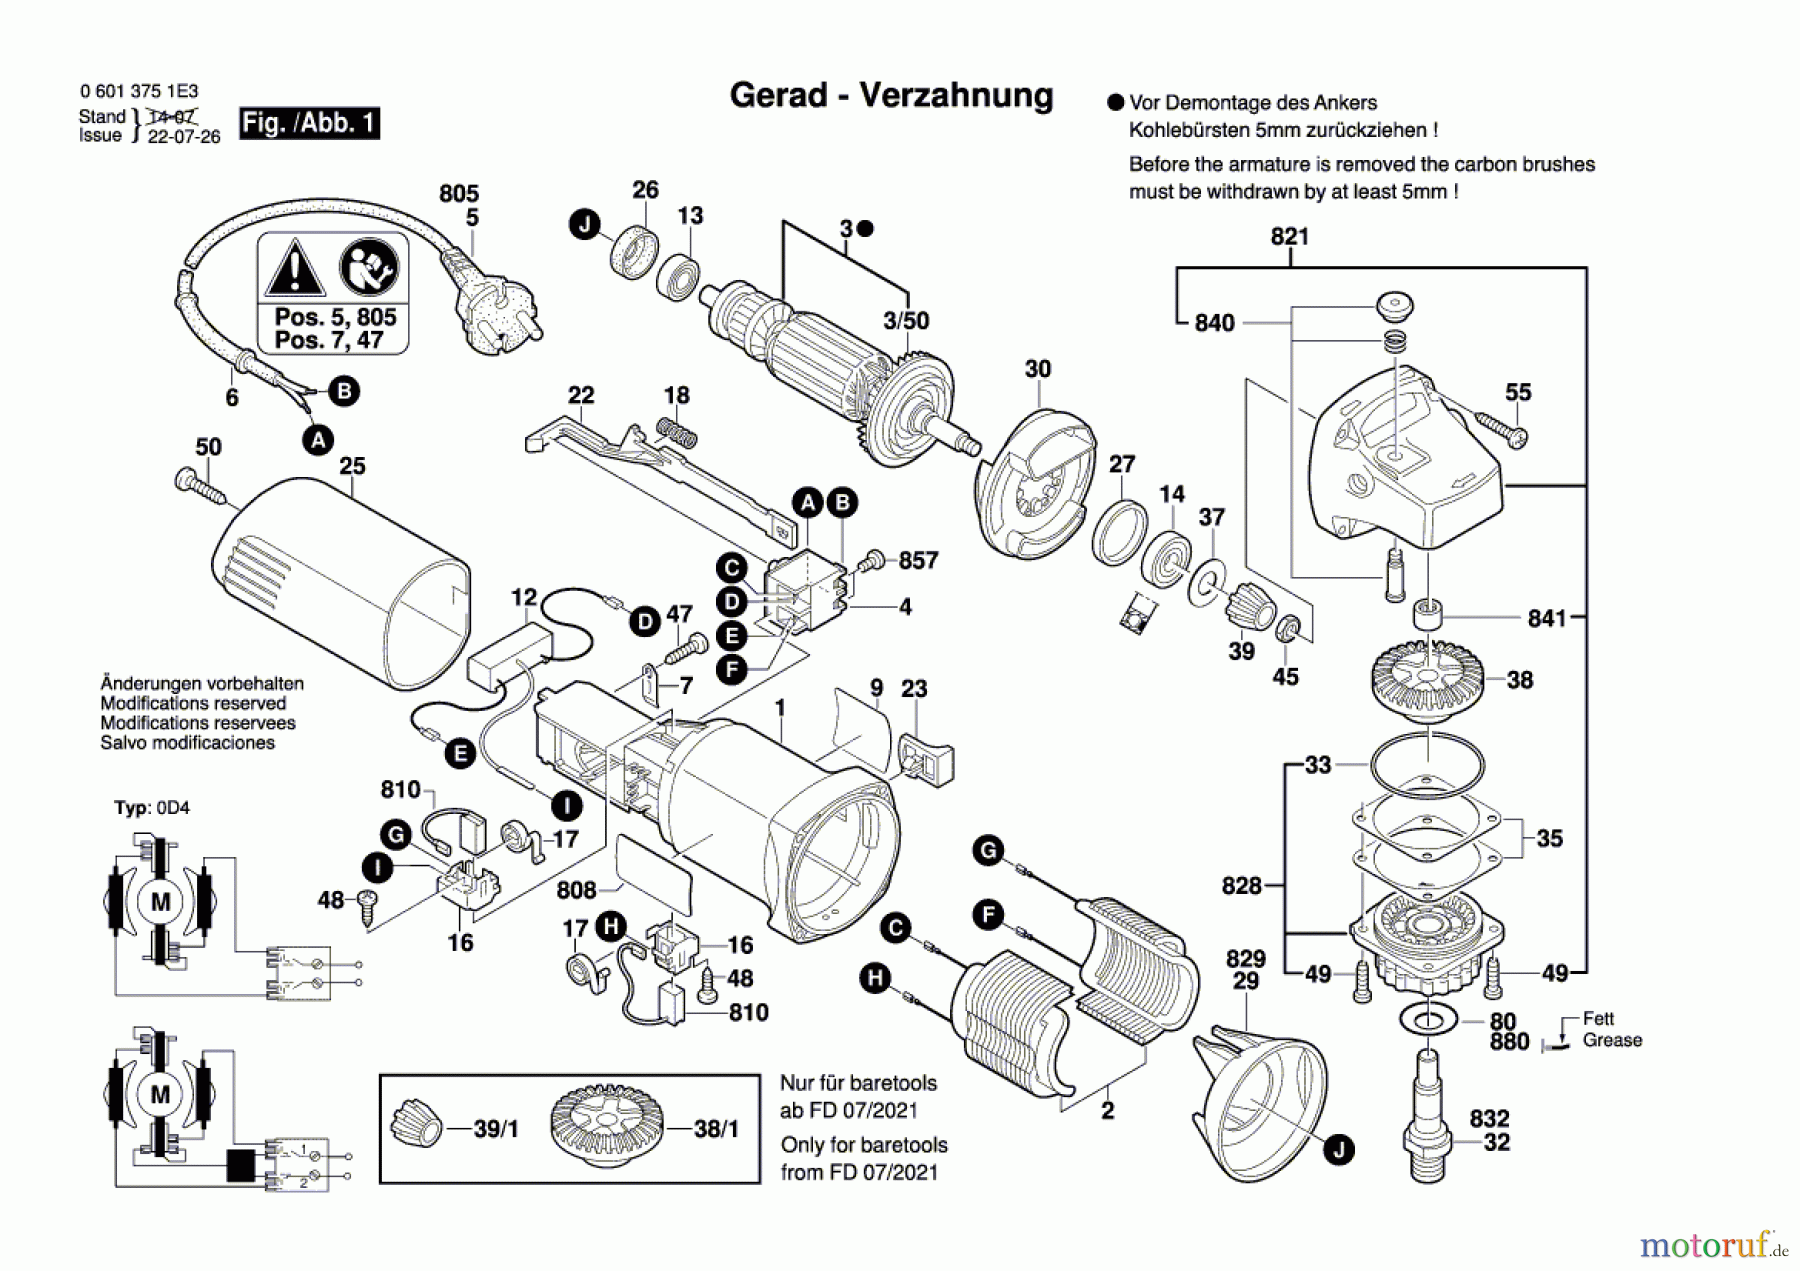  Bosch Werkzeug Winkelschleifer GWS 6-115 Seite 1